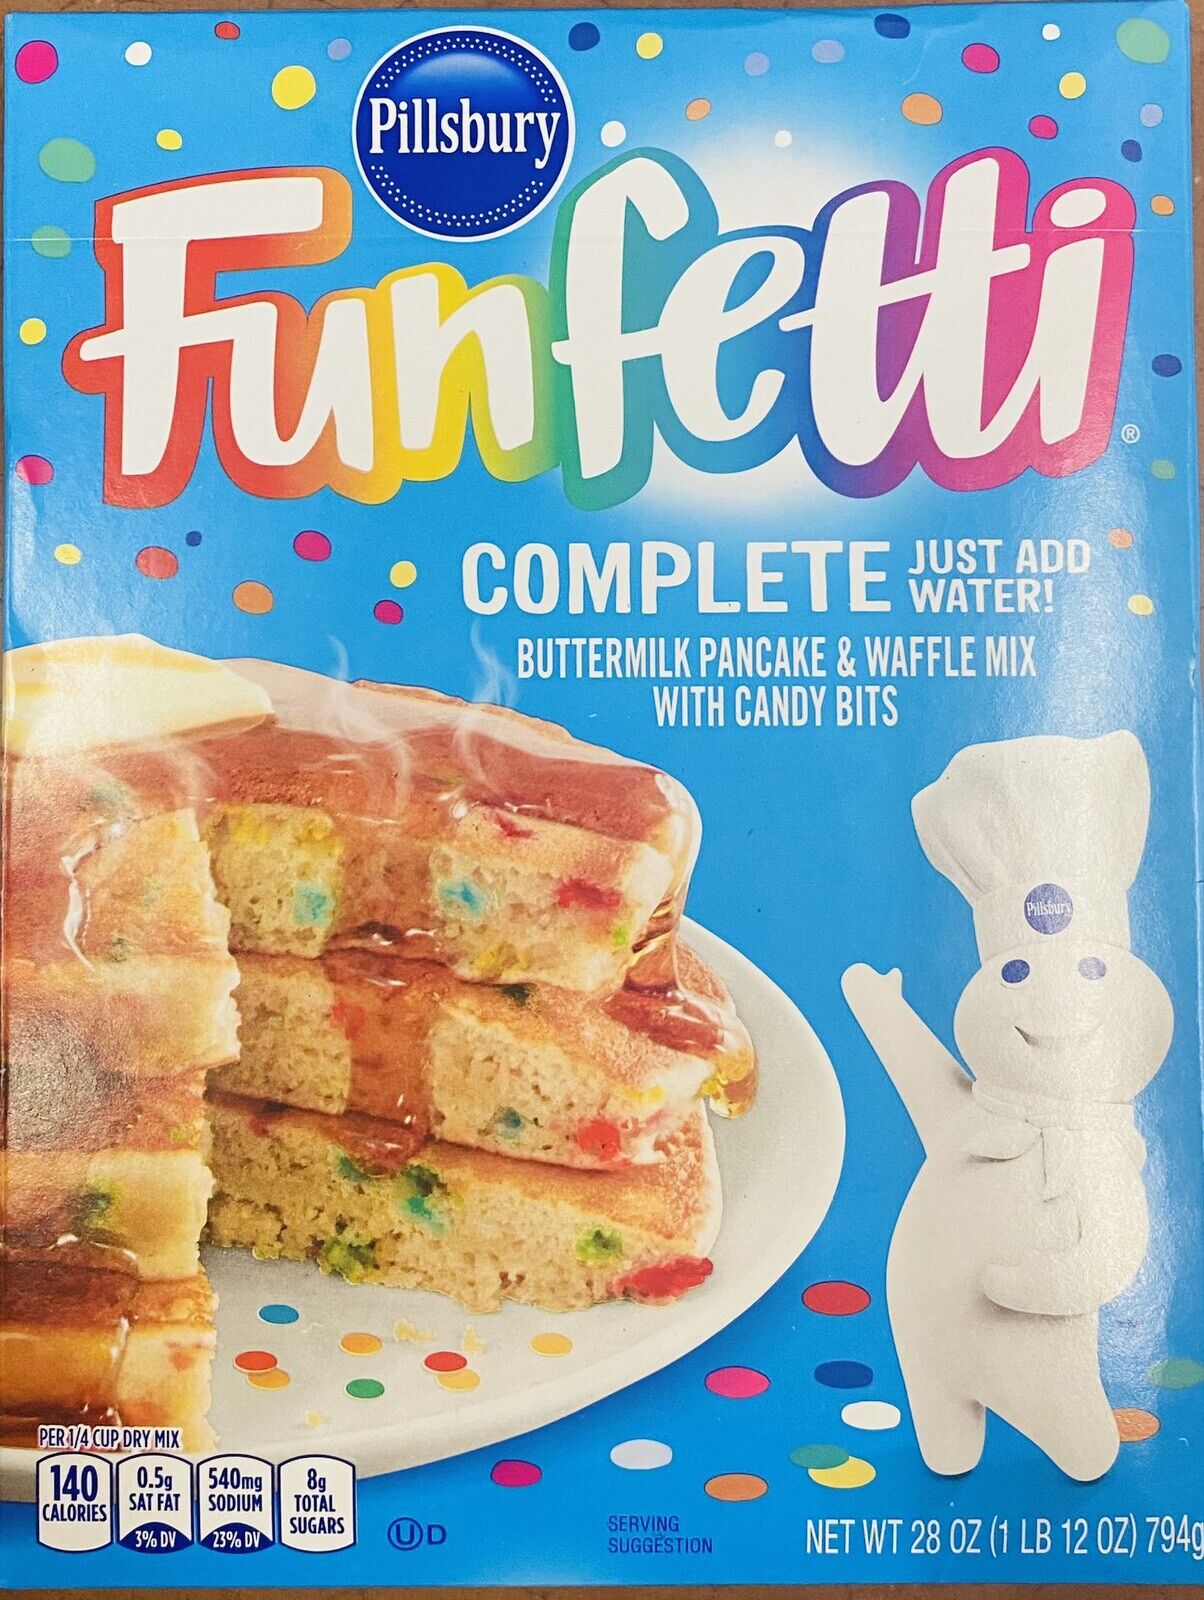 Pillsbury FUNFETTI Complete Buttermilk Pancake & Waffle Mix Candy Bits 28 oz Box - image 1 of 3